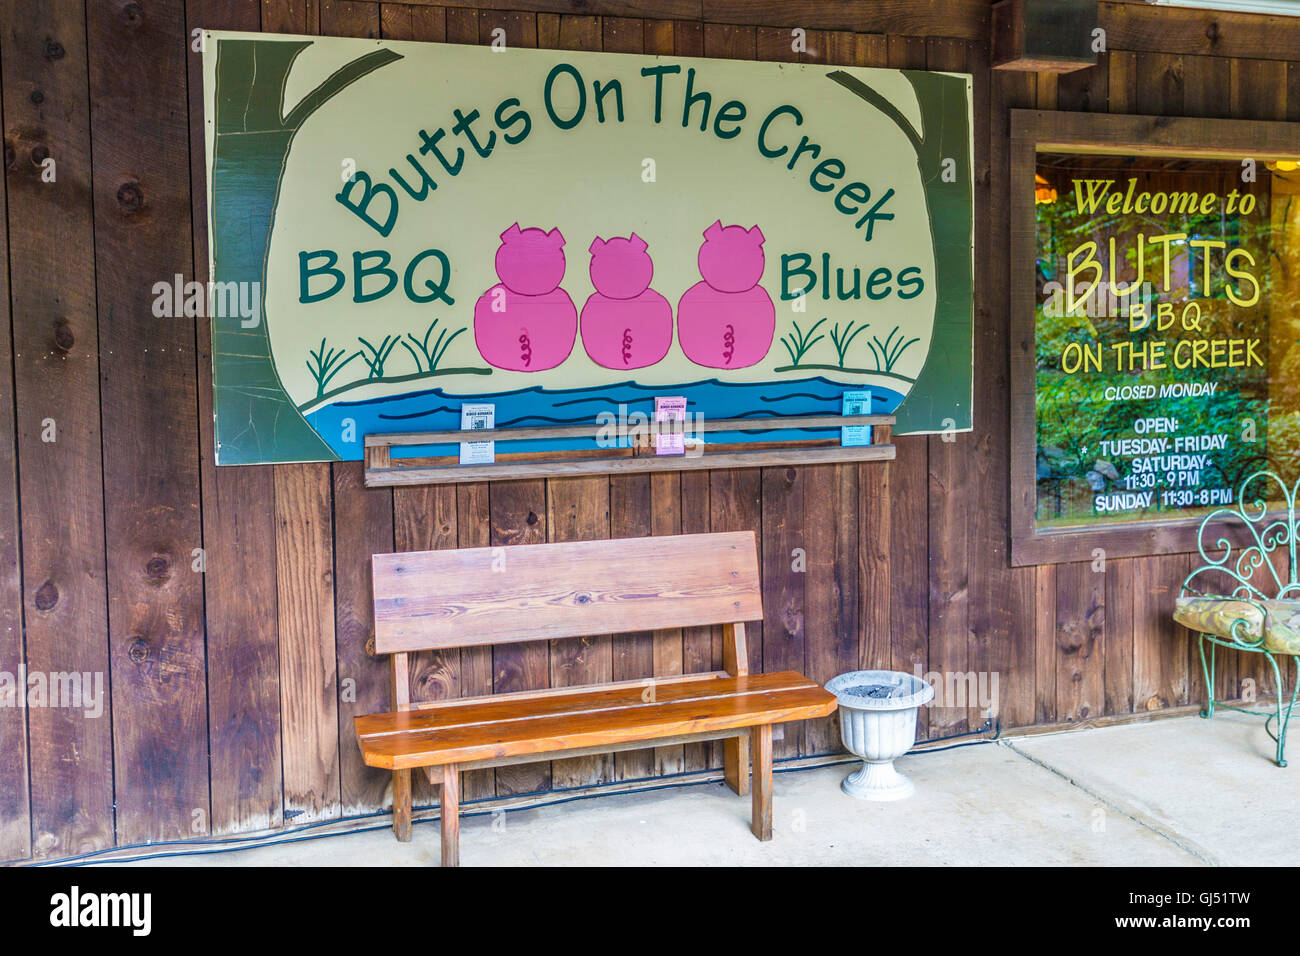 Melden Sie sich für "Butts On The Creek" BBQ und Blues Restaurant und  Geschenk-Shop in Maggie Valley, North Carolina Stockfotografie - Alamy